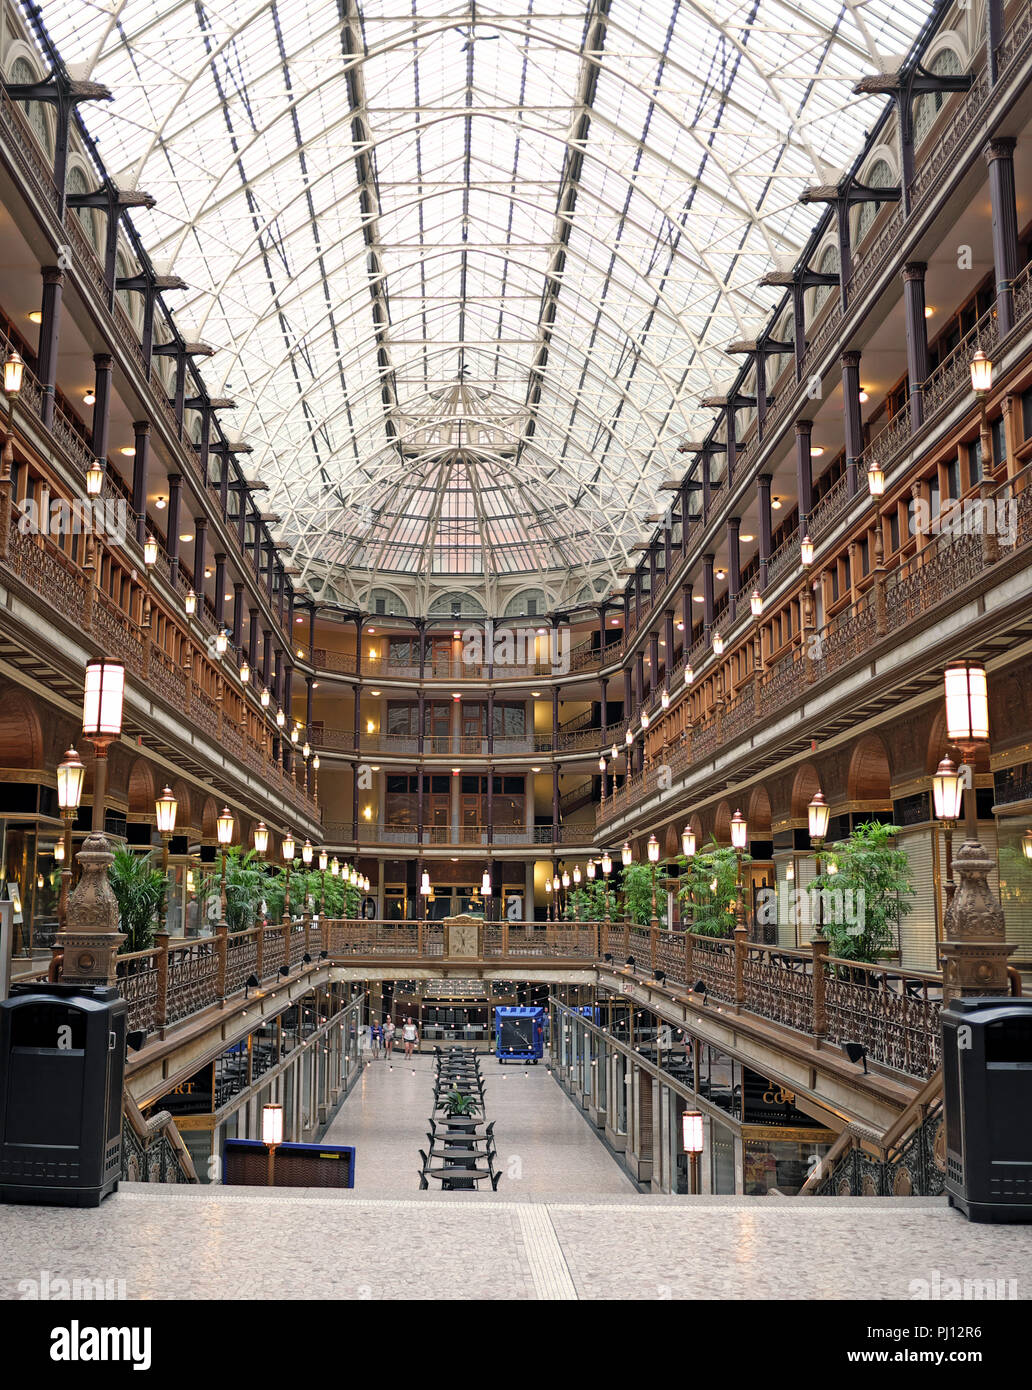 La Cleveland Arcade, aperto nel 1890 come uno dei primi indoor centri commerciali negli Stati Uniti, è ormai un punto di riferimento nel centro di Cleveland, Ohio, USA. Foto Stock